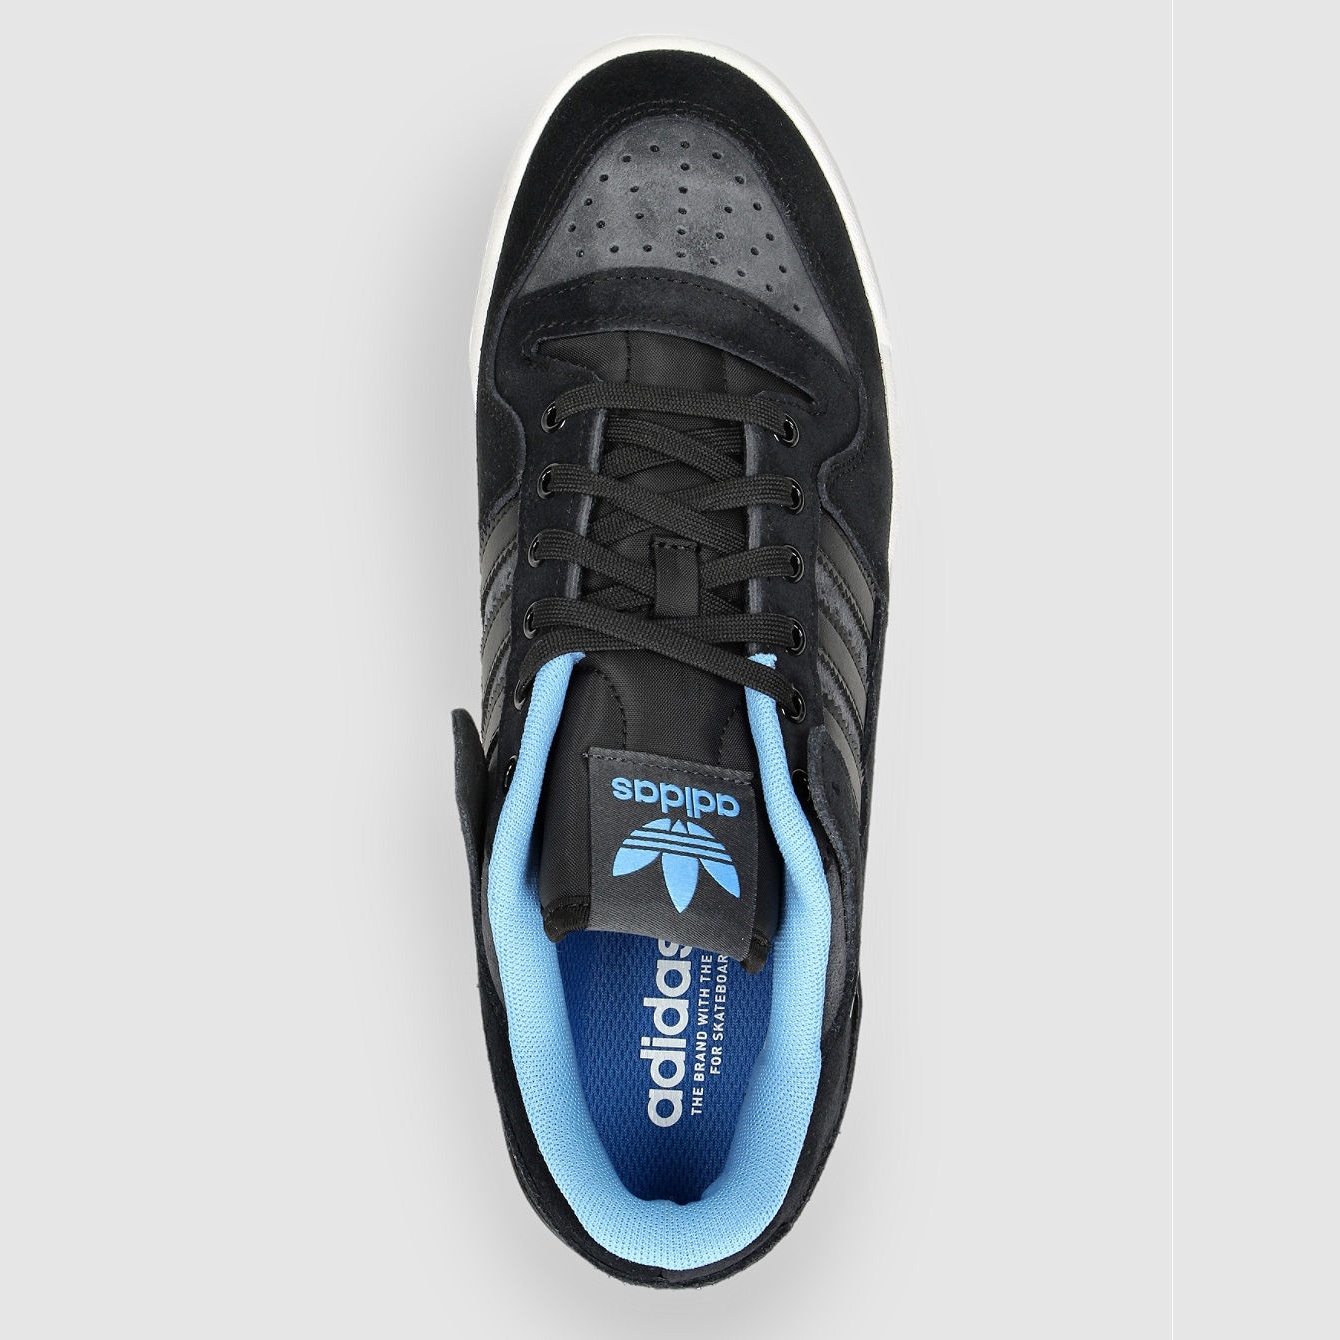 Adidas Forum 84 Low Adv Cblack Blubrs Carbon Chaussures de skate Homme vue2